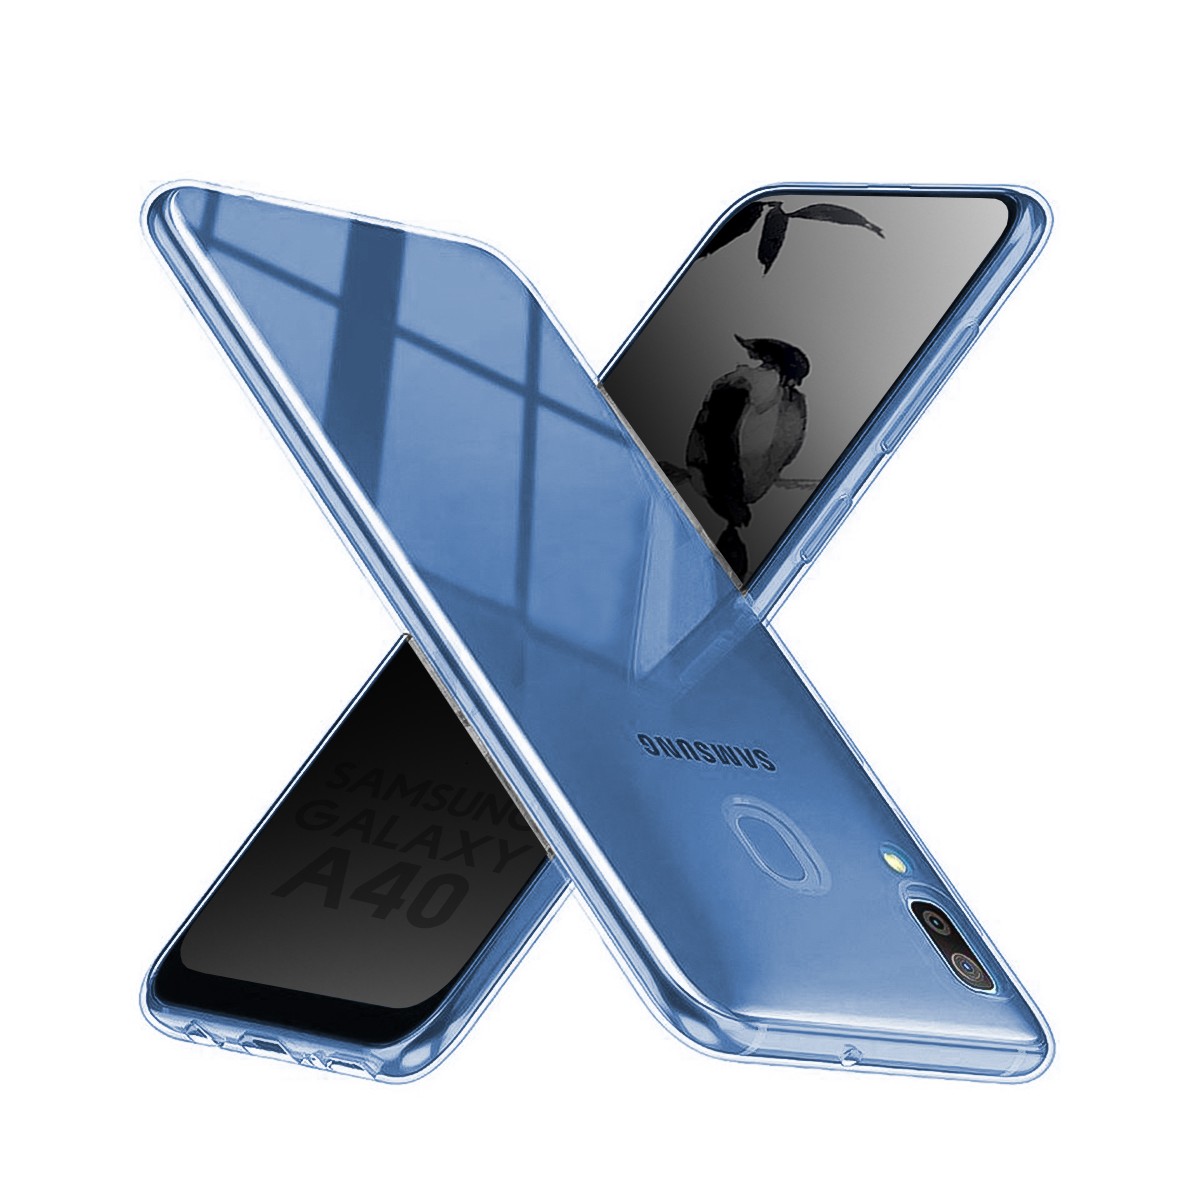 Akami coque pour Samsung Galaxy A40 en silicone de haute qualité